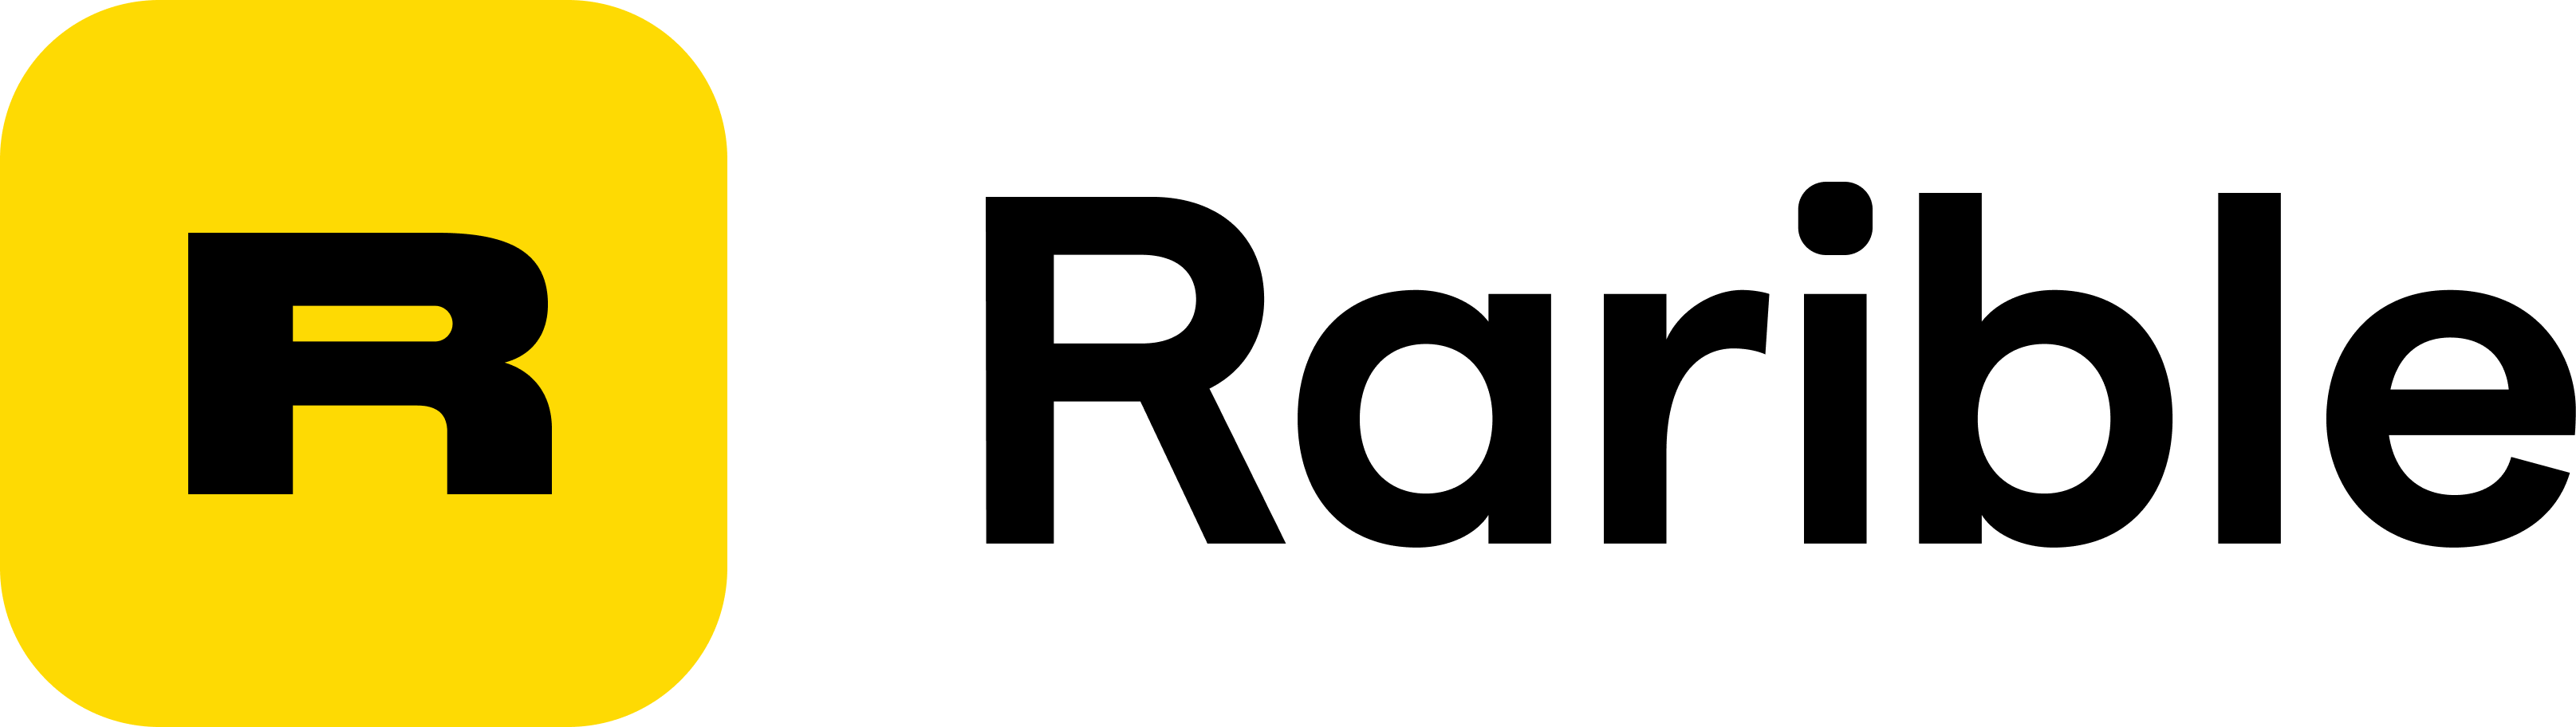 Logotype Black